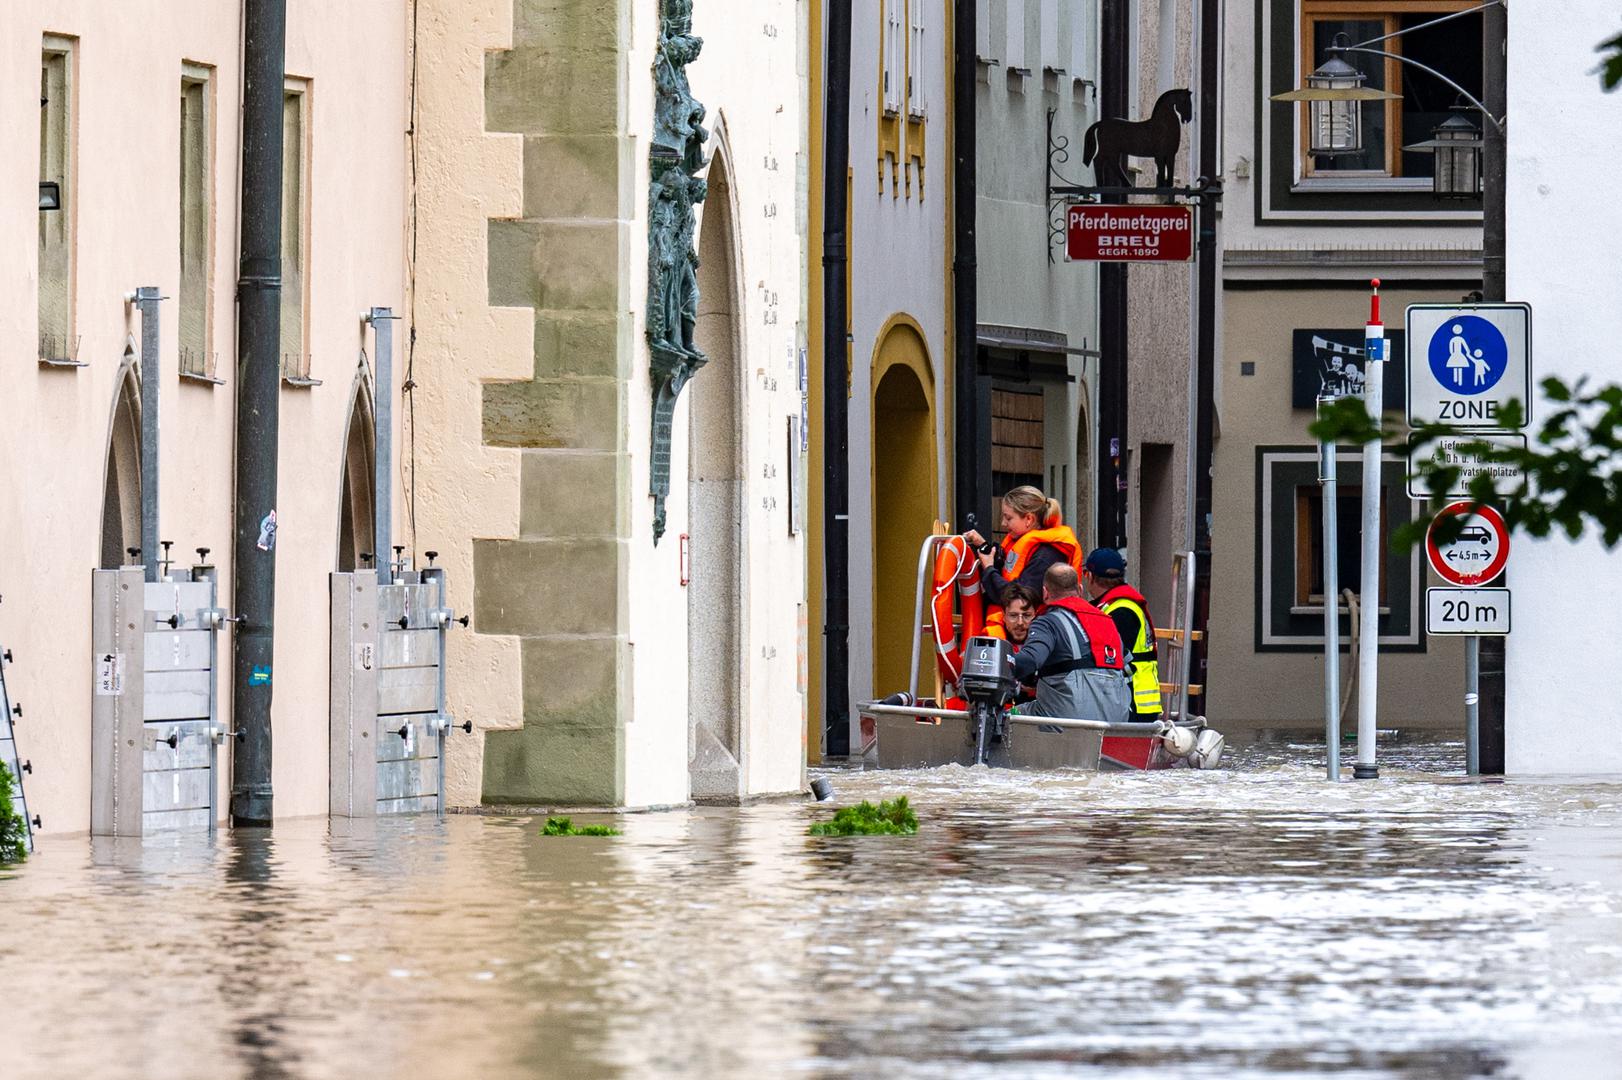 Passau je poznat kao grad triju rijeka. Smješten je na rijeci Dunavu te ušću rijeka Inna i Ilza. Ima oko 50.000 stanovnika. Gradske vlasti su zbog poplava zaustavile motorizirani promet i ispraznile podzemna parkirališta. Na fotografijama se vidi kako je cijeli središnji dio grada pod vodom. 